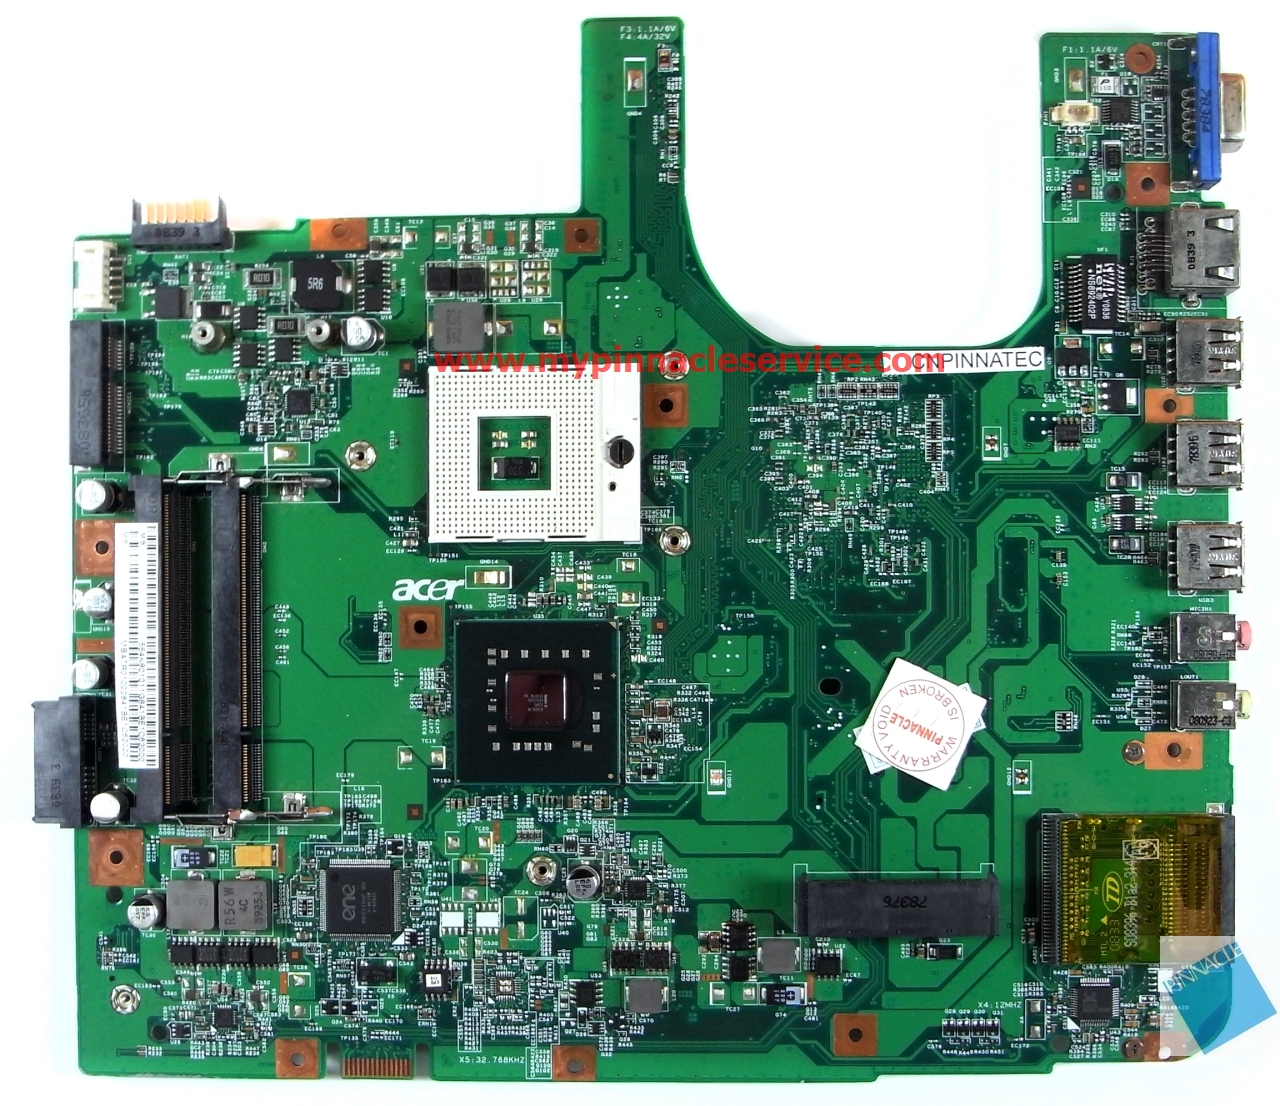 MBATR01002 motherboard for Acer aspire 5335 5735 48.4K801.011